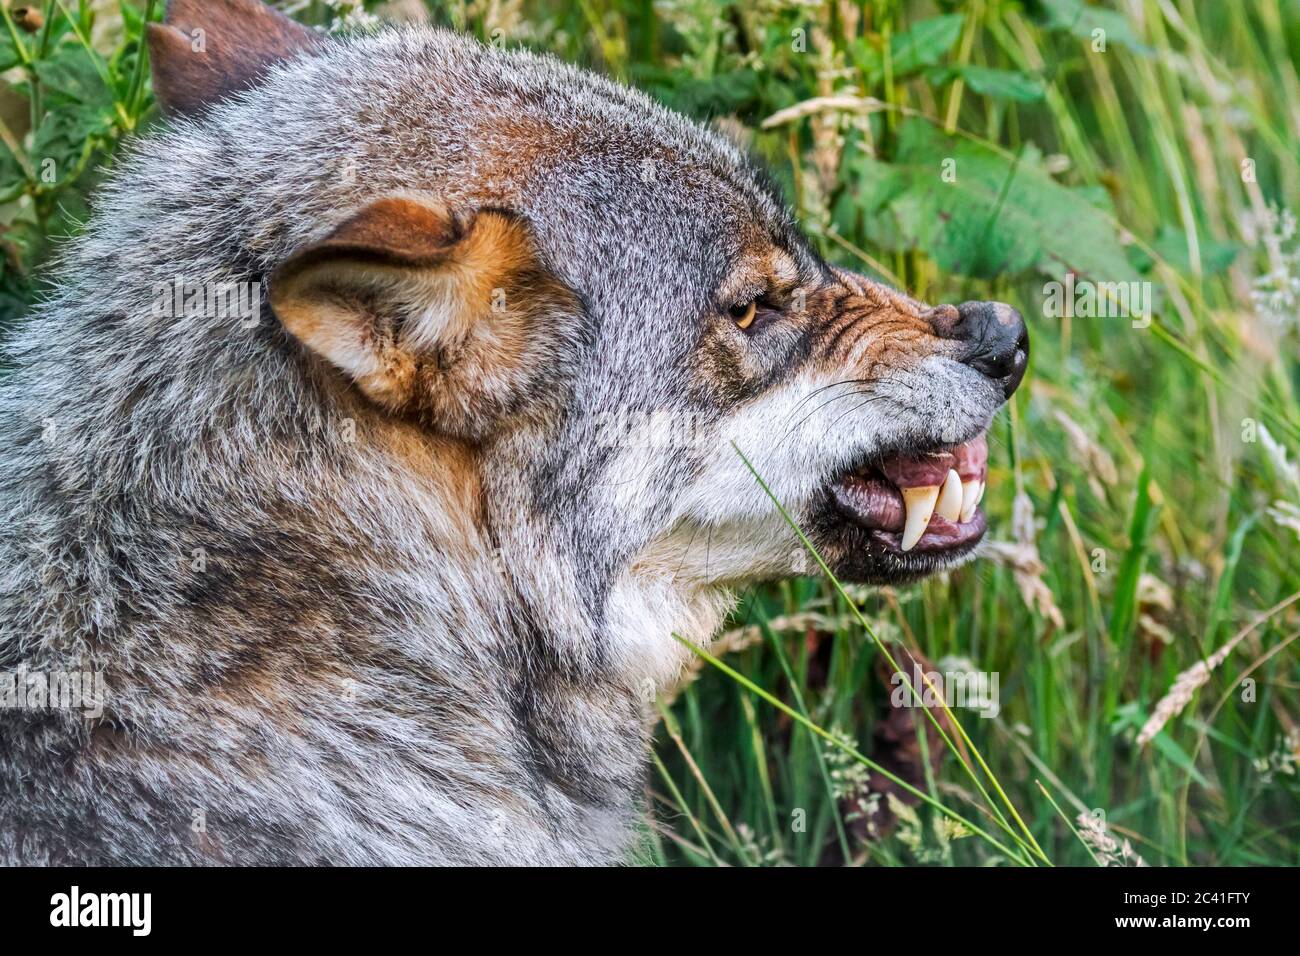 Lobo enojado, agresivo y amenazado (Canis lupus) mostrando nariz arrugada y rebaando sus narices cuando el miembro del paquete quiere robar su comida Foto de stock